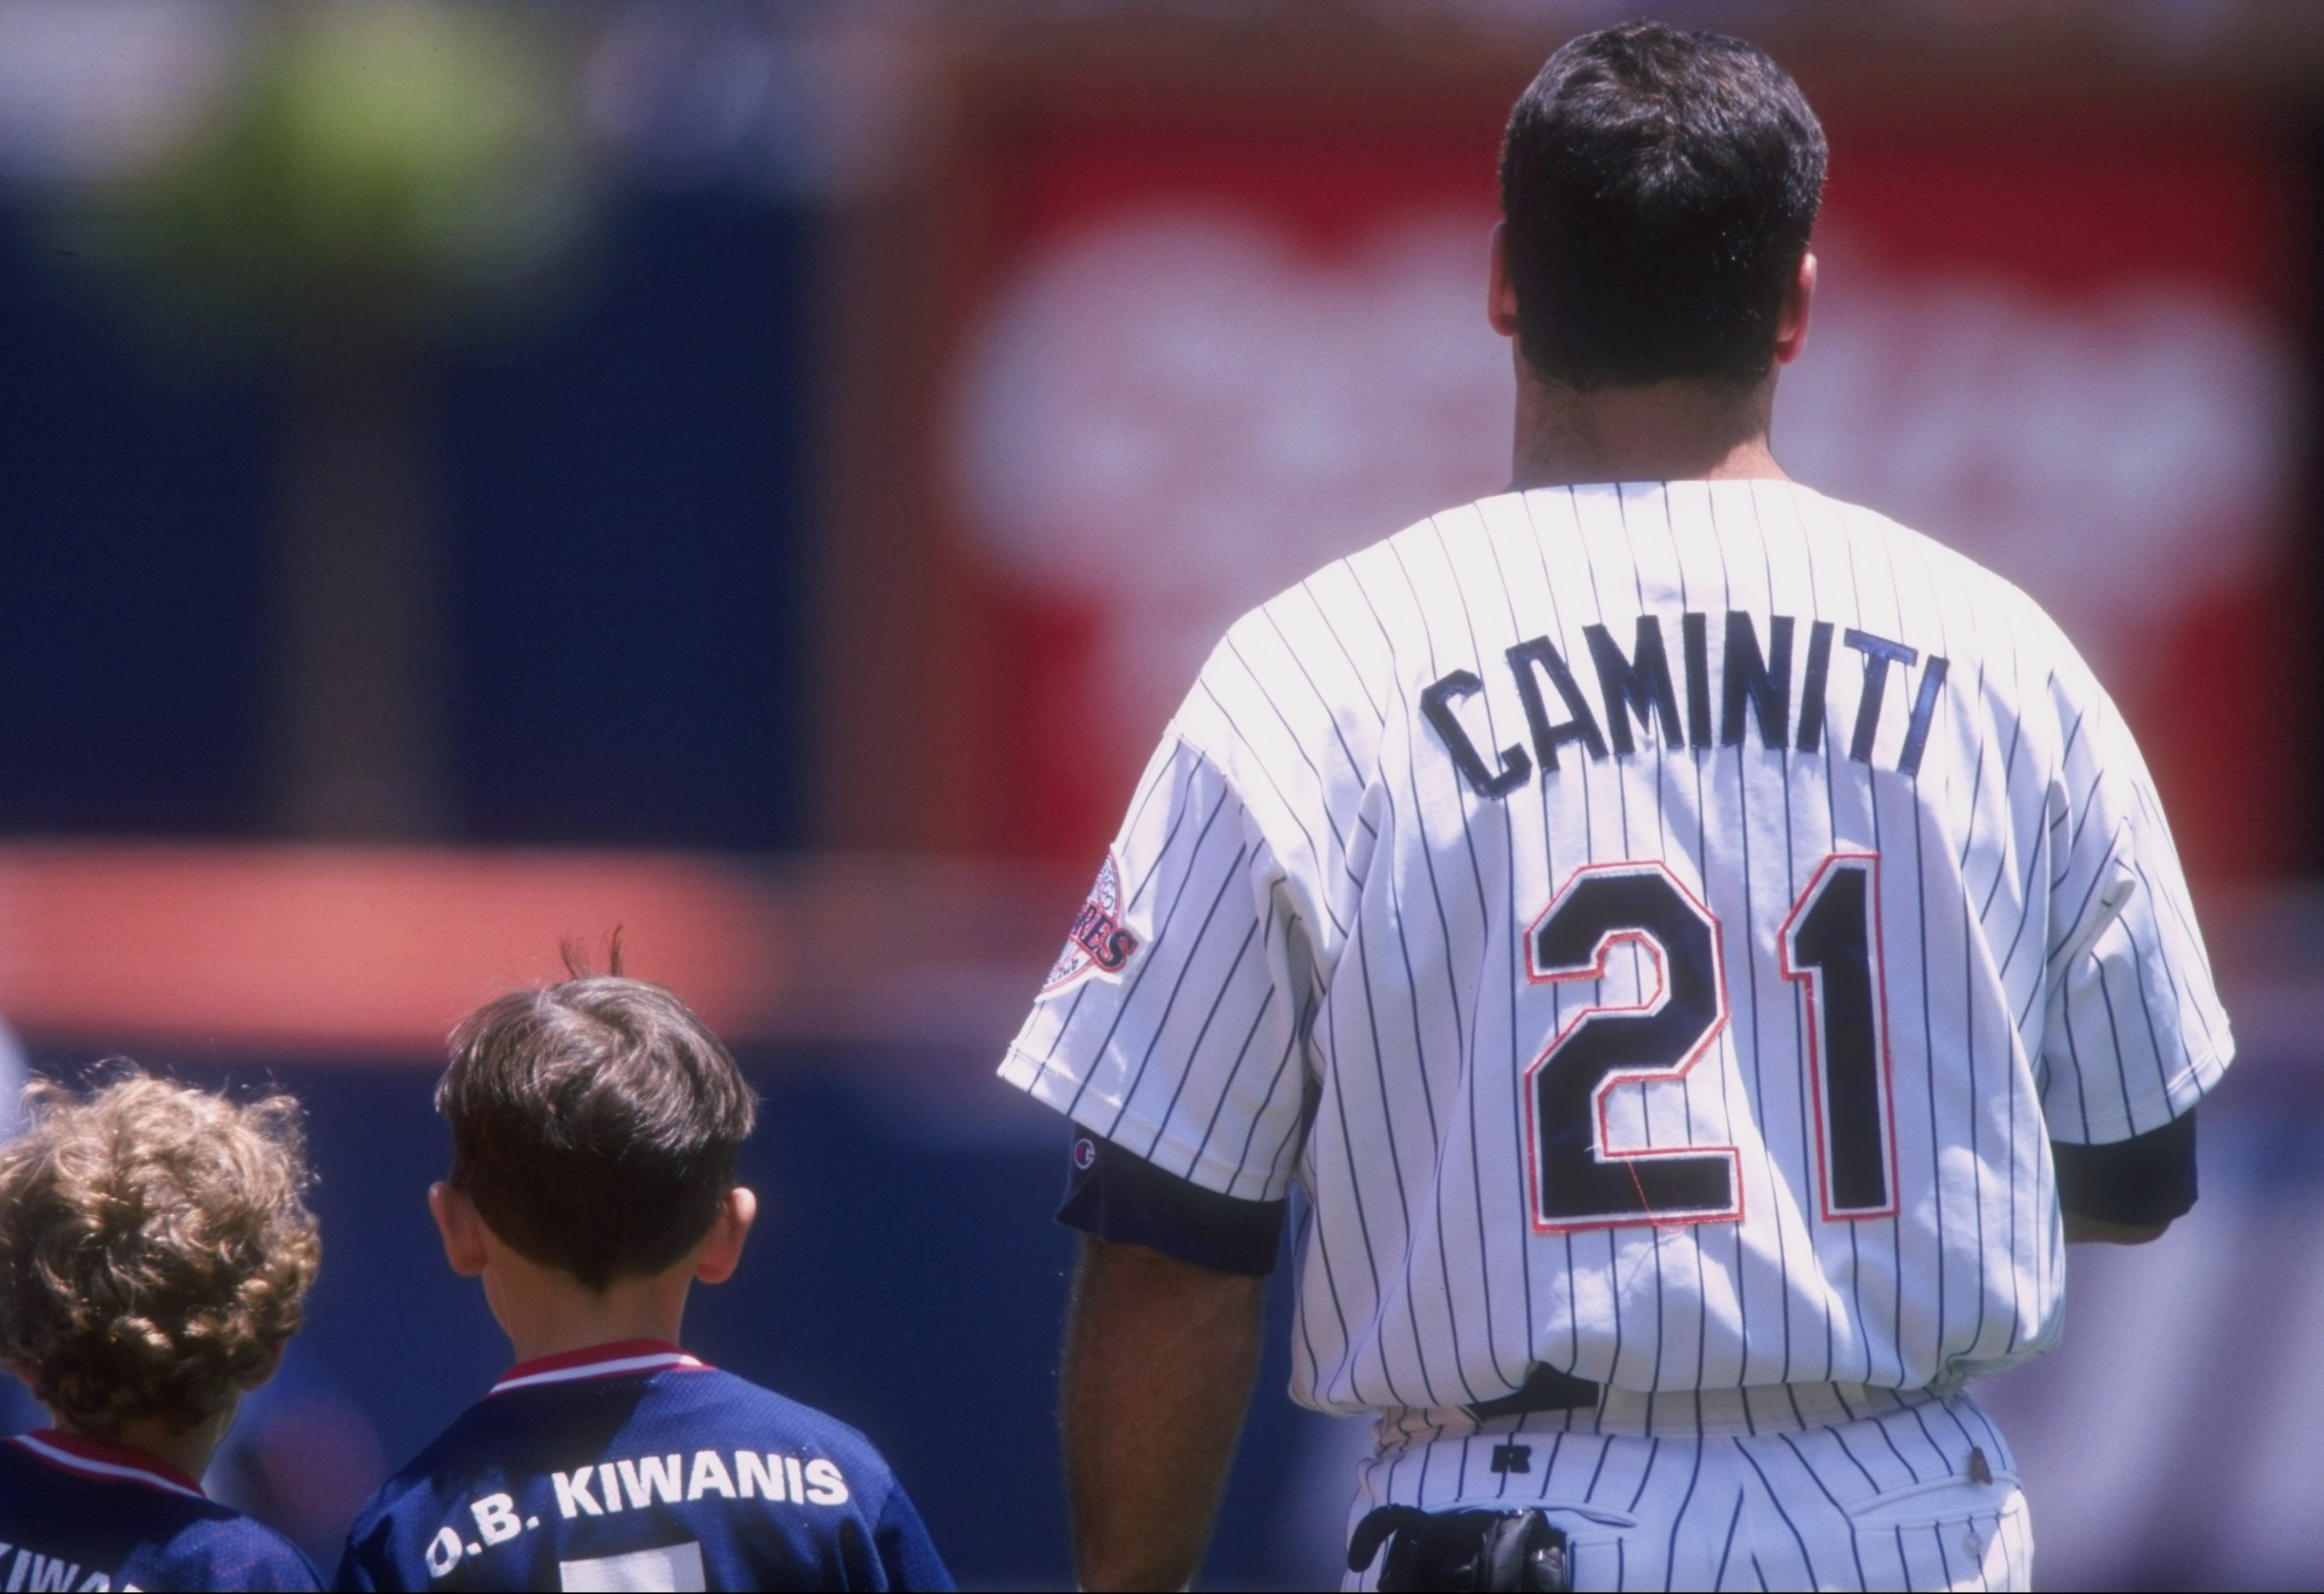 Ken Caminiti  Ken caminiti, Major league baseball players, Baseball